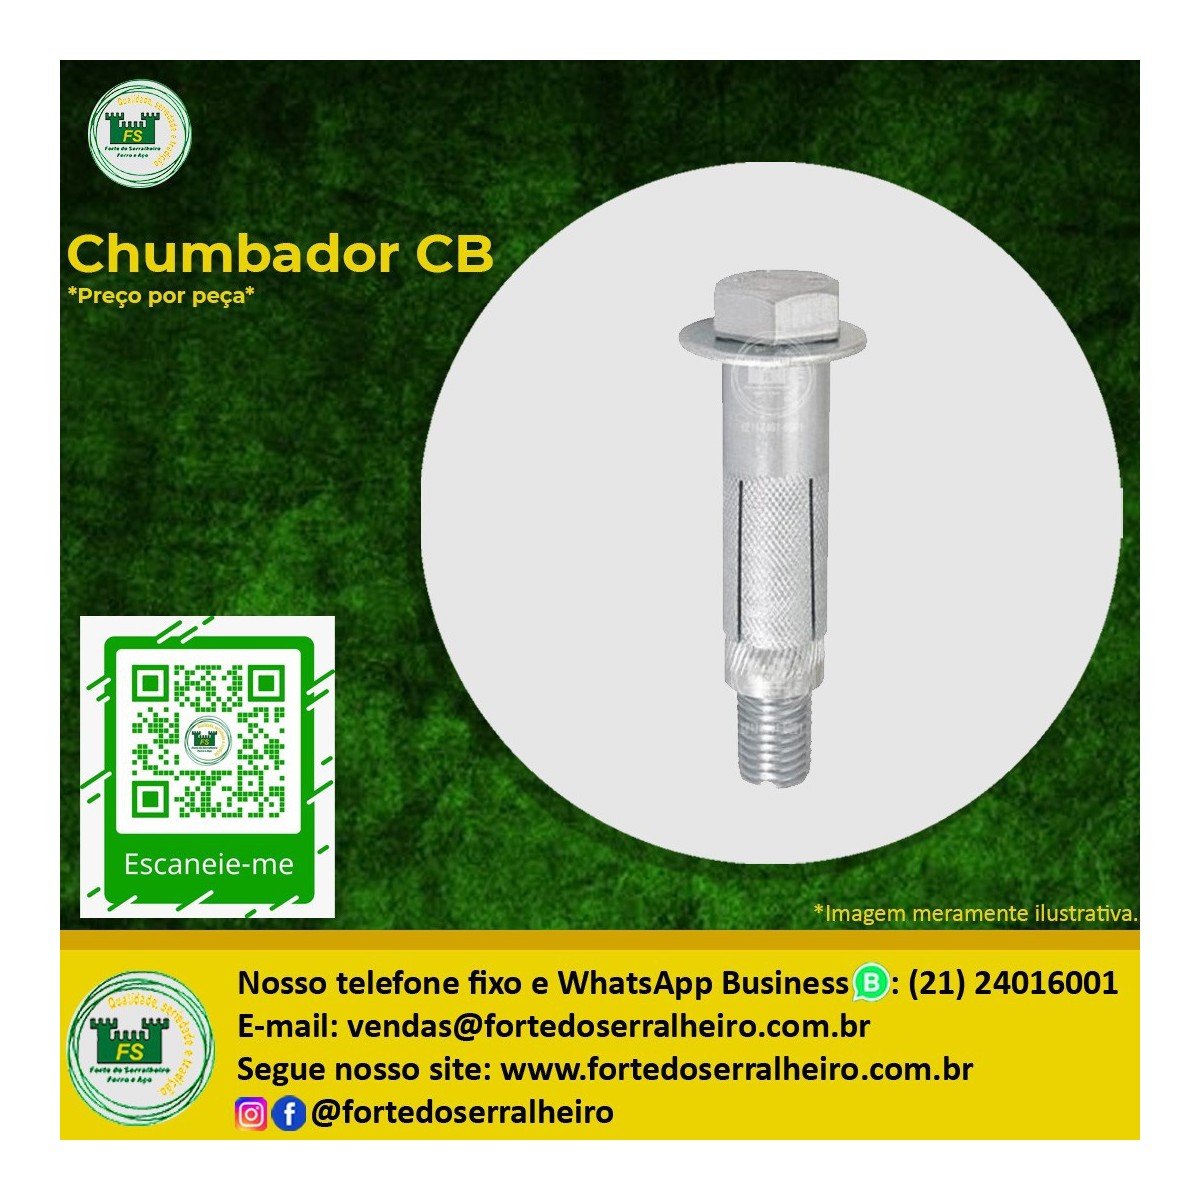 Chumbador CB